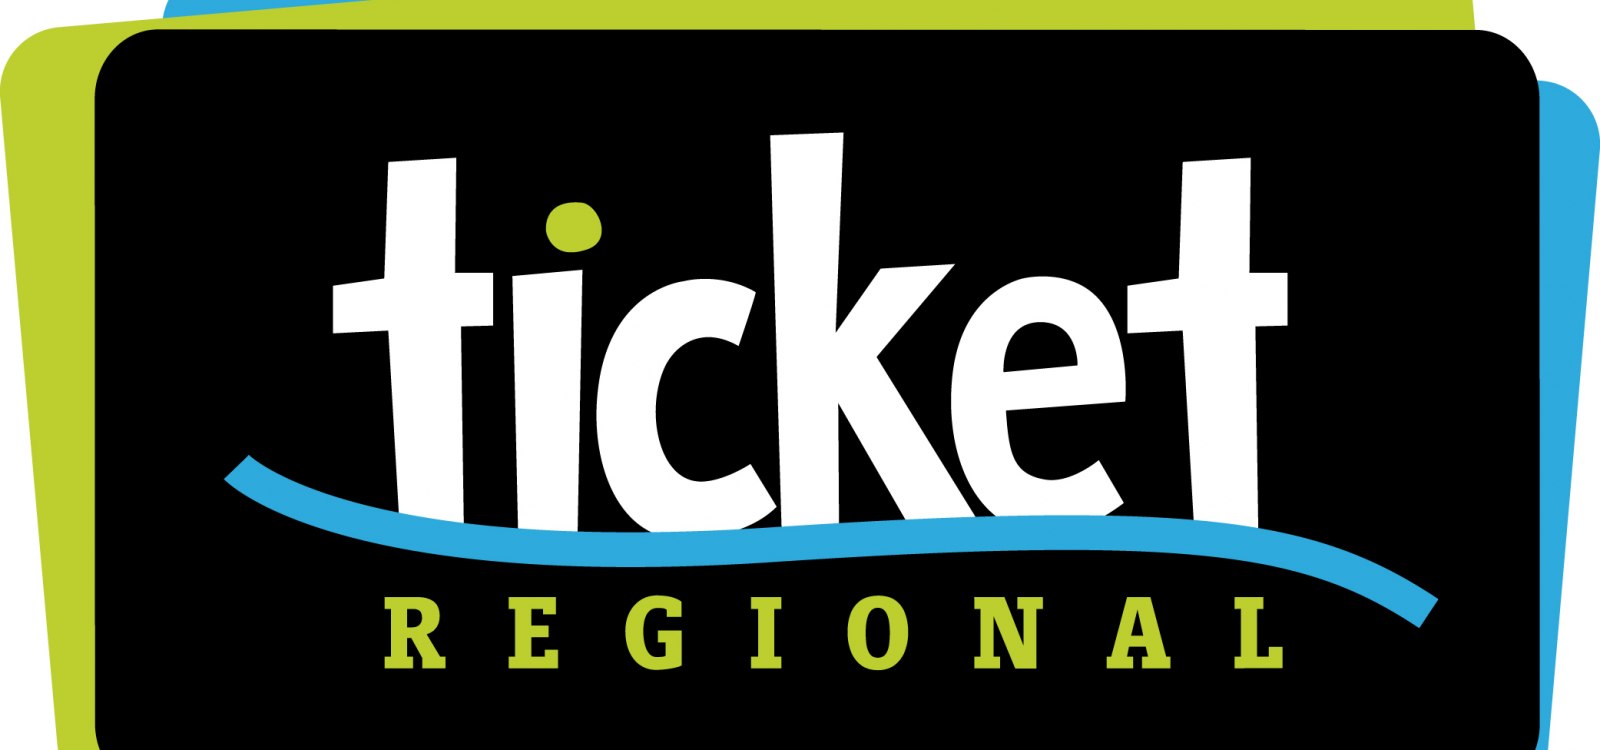 Vorverkaufstelle - Ticket Regional